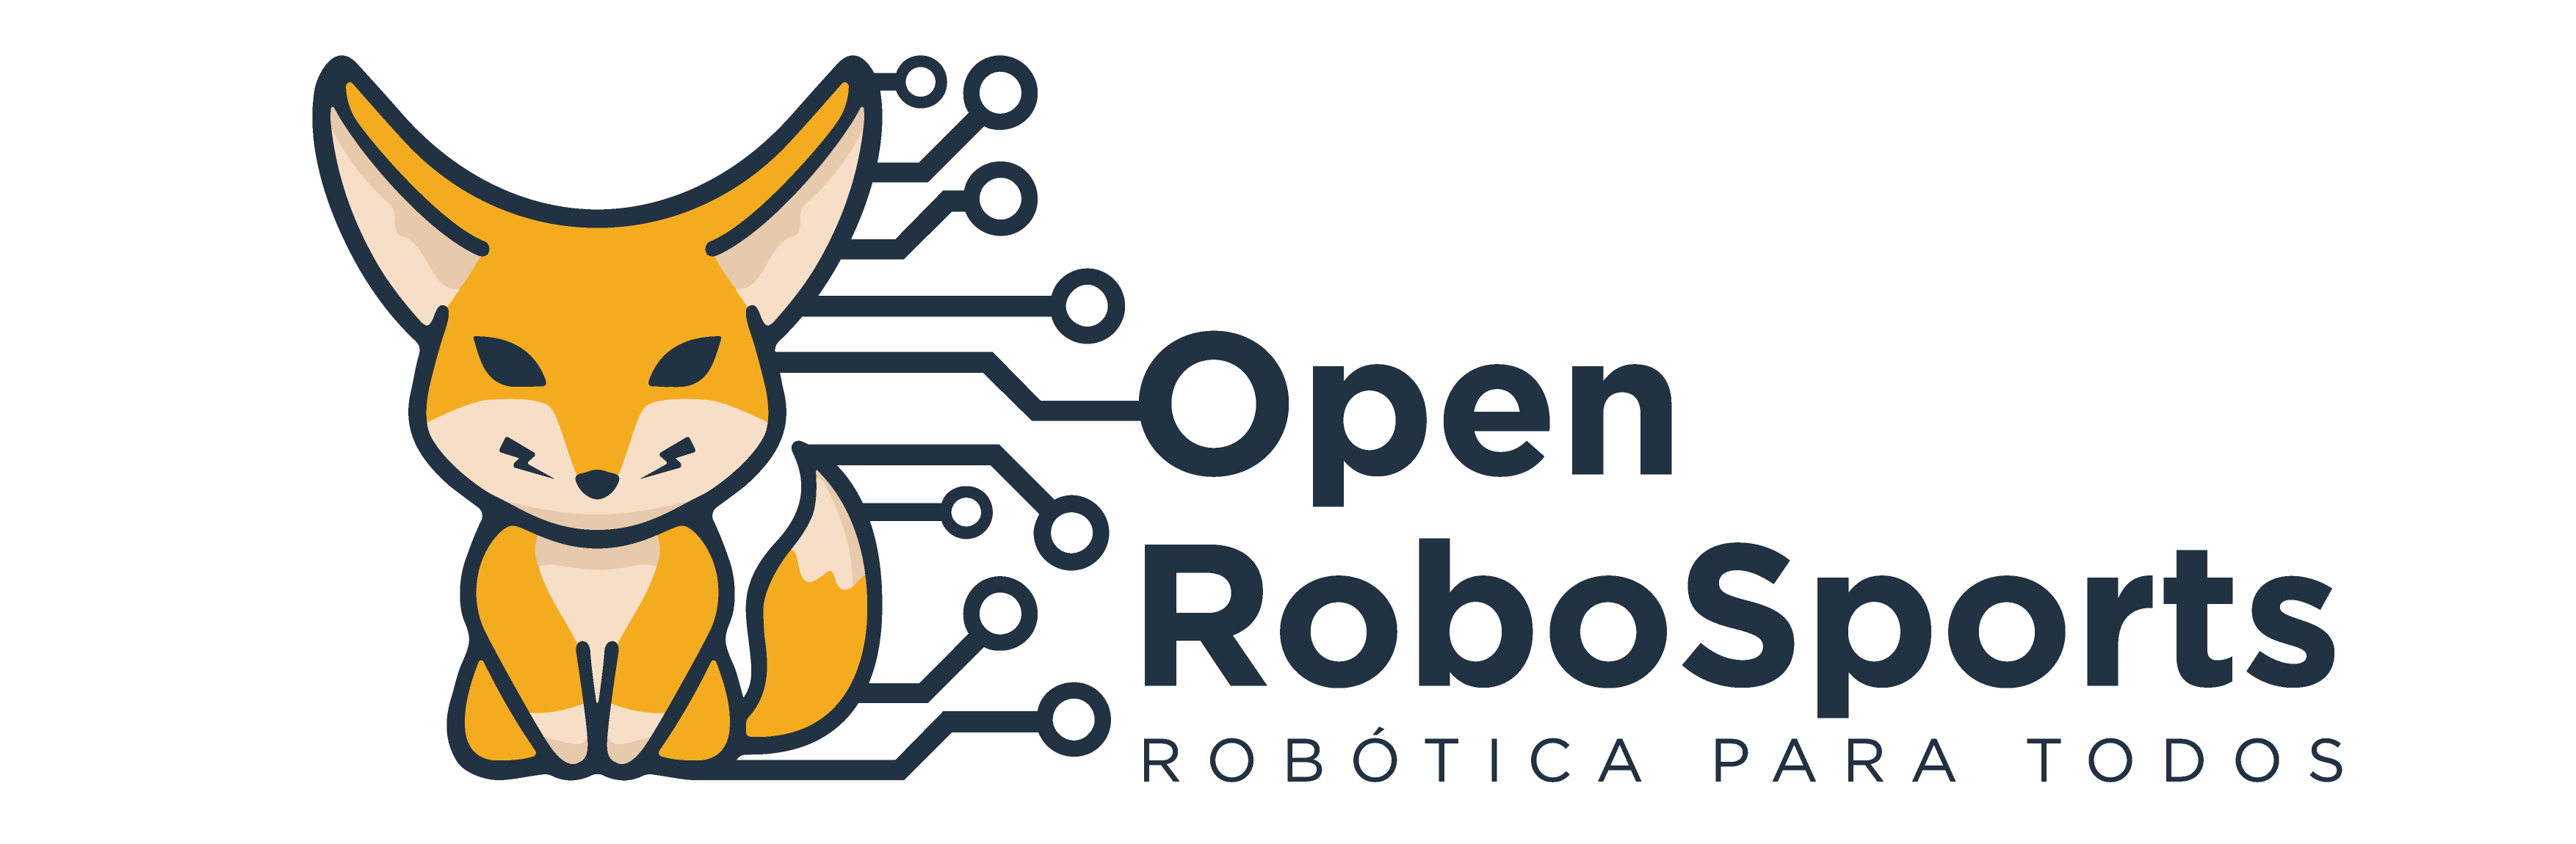 Open RoboSports Logo